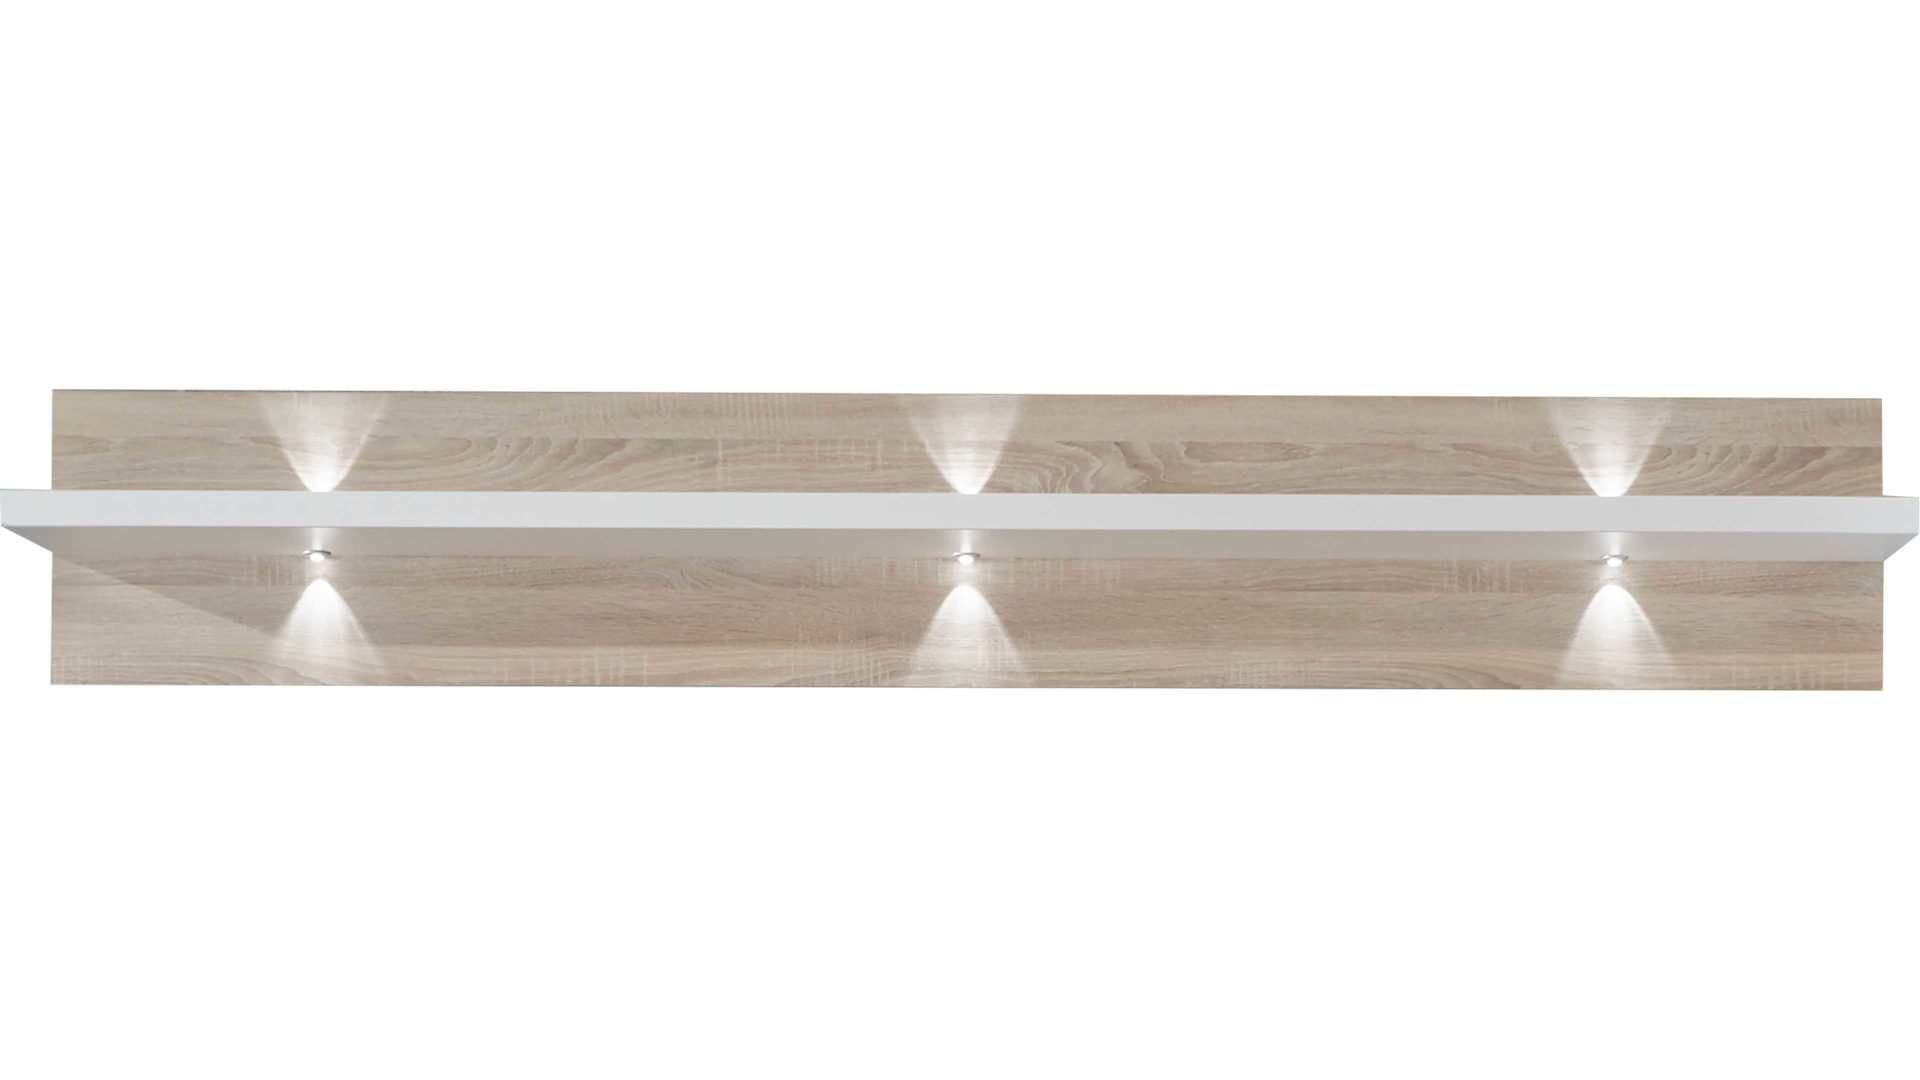 Wandregal Ideal möbel aus Holz in Holzfarben Wandregal Manhattan Weiß & Eiche sägerau – Länge ca. 200 cm